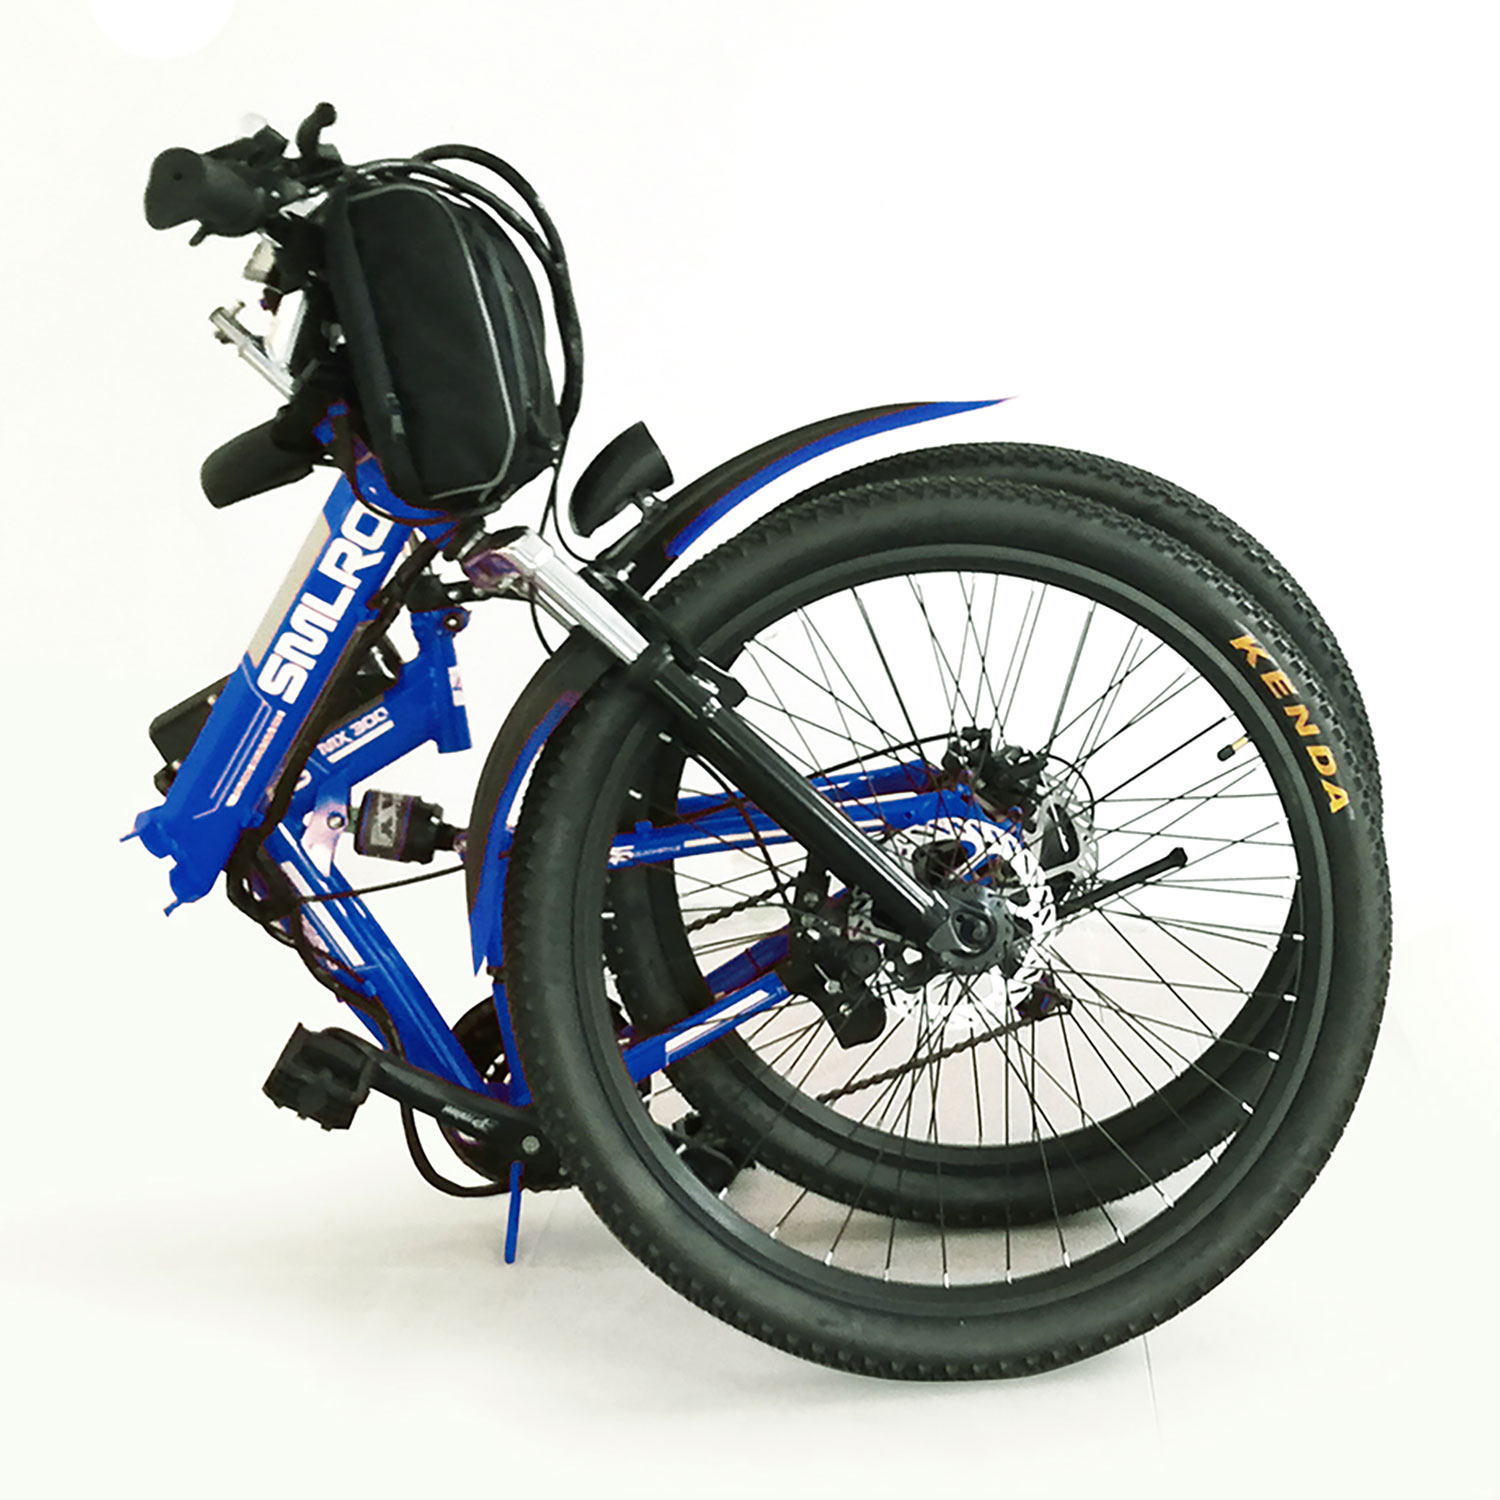 Bicicleta Eléctrica Plegable - Modelo YK-EB009 - Color Azul - SMRLO